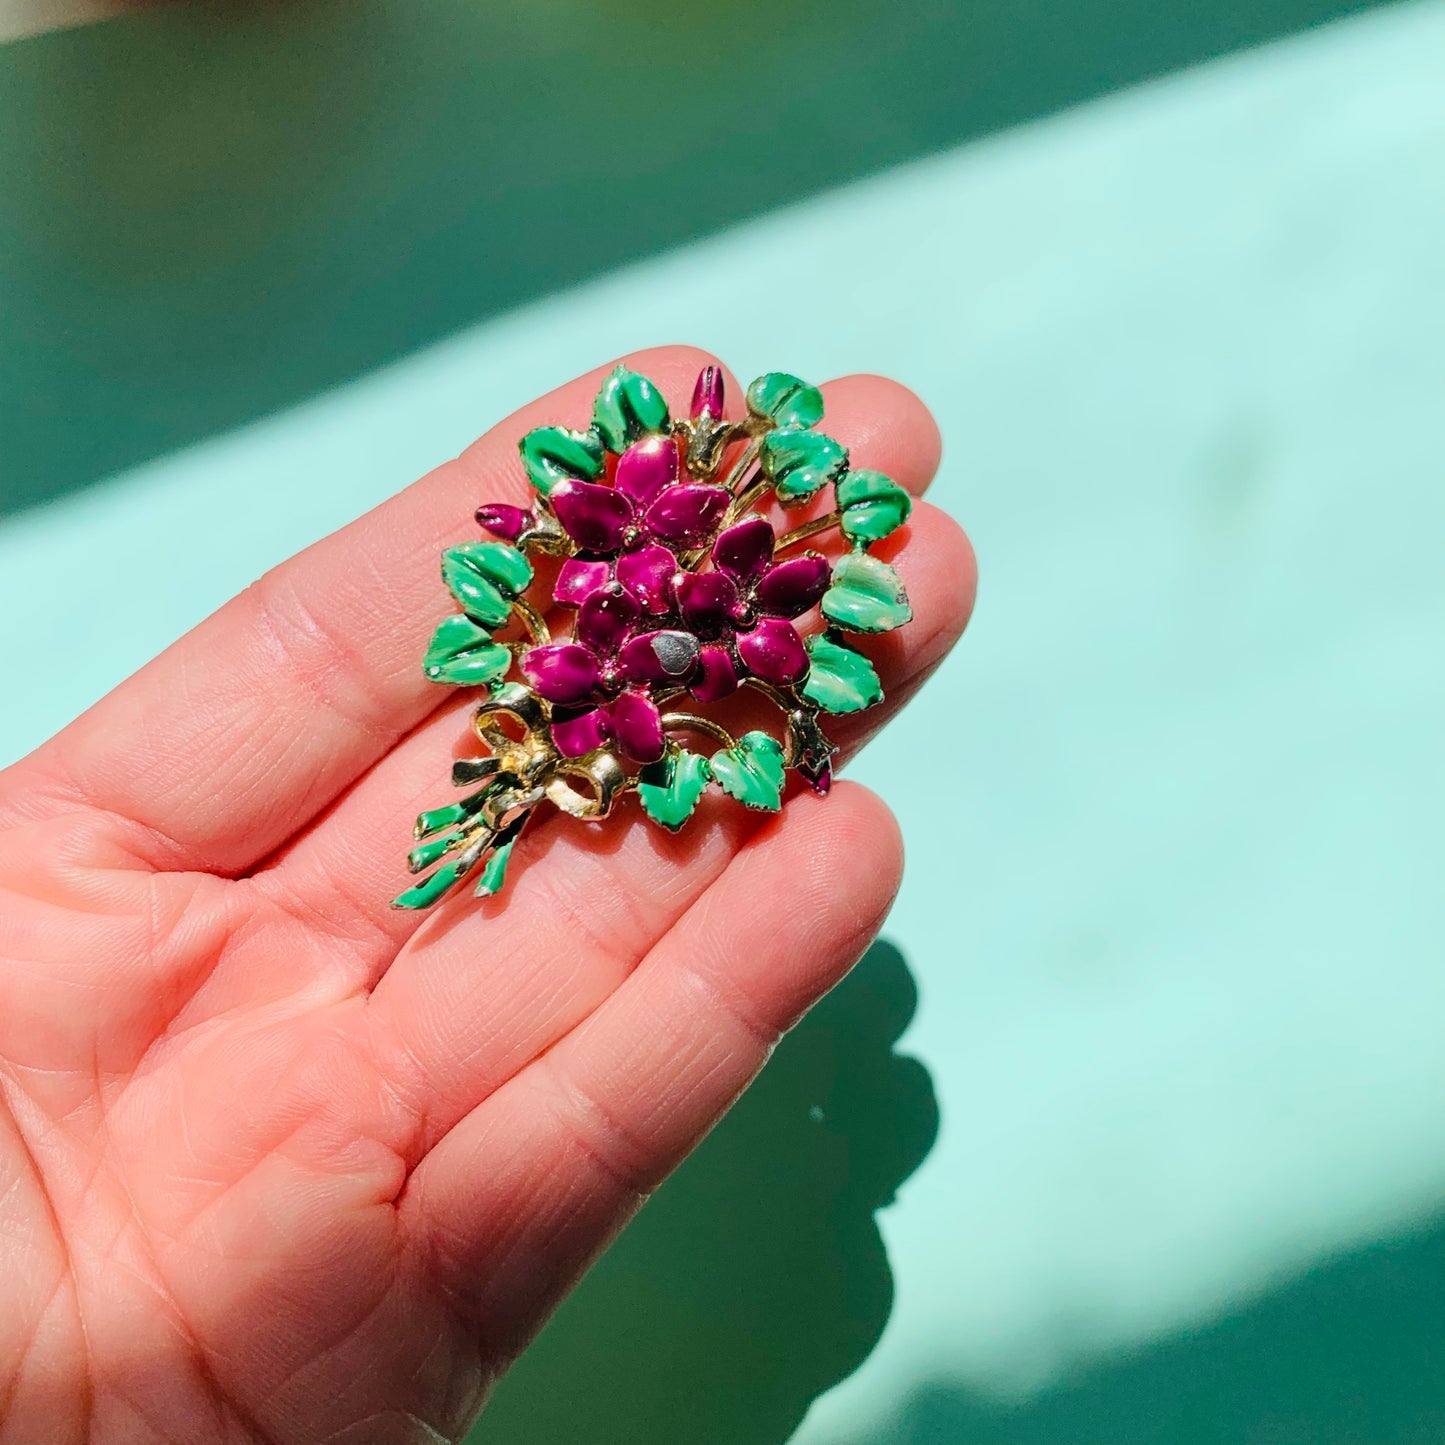 1950s Italian enamel flower bouquet brooch/earrings